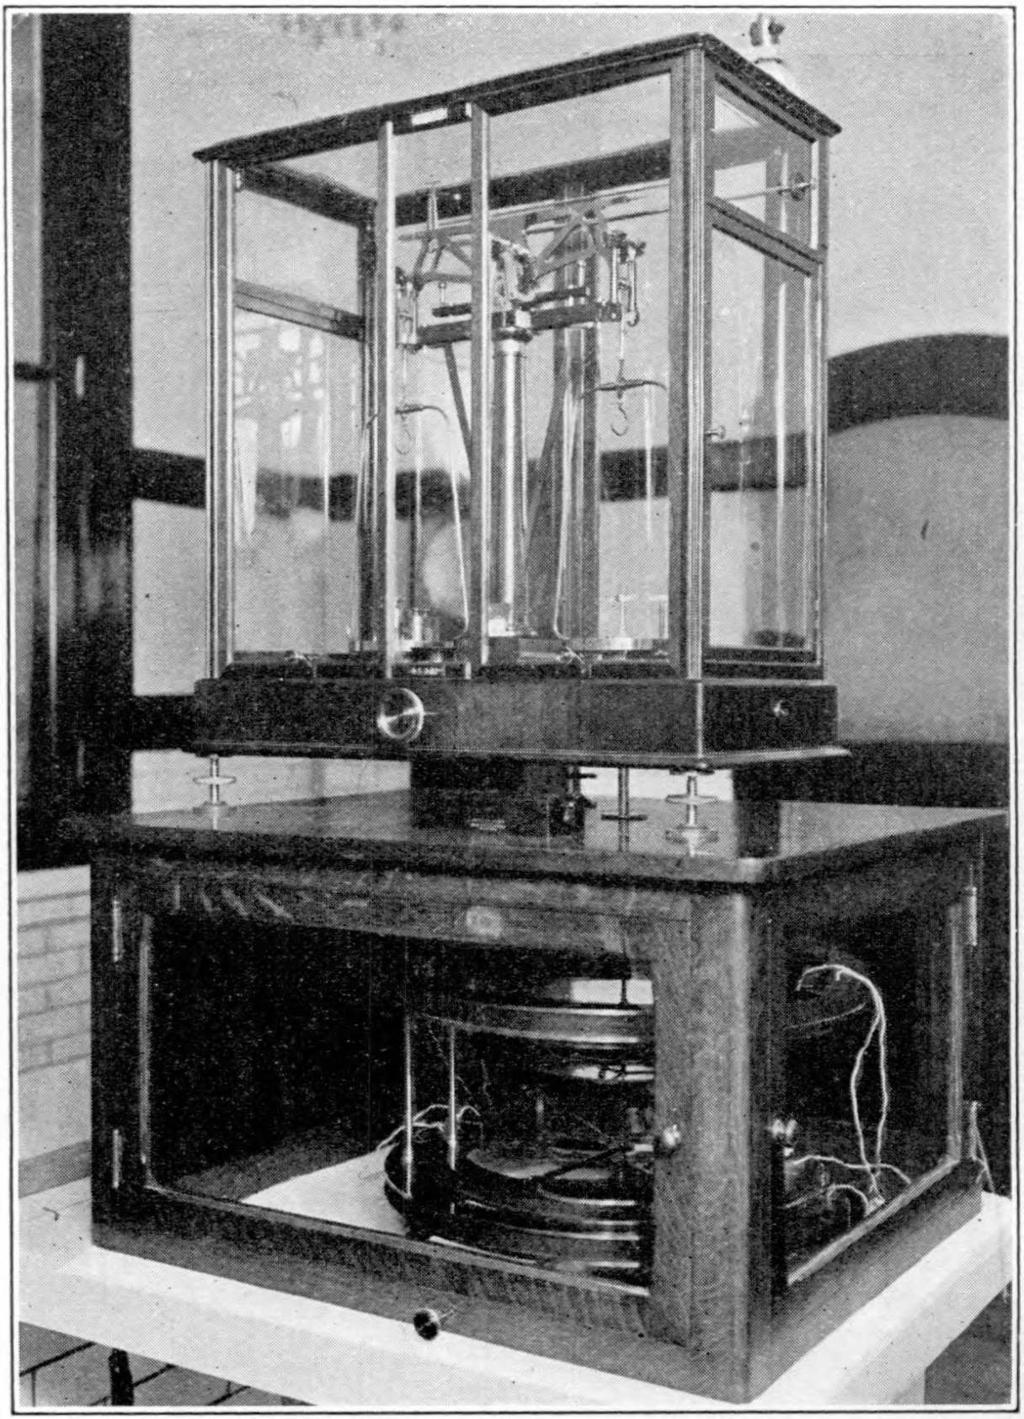 Waga prądowa NIST konstrukcja z 1927 roku Belka wagi Lewa szalka Prawa szalka